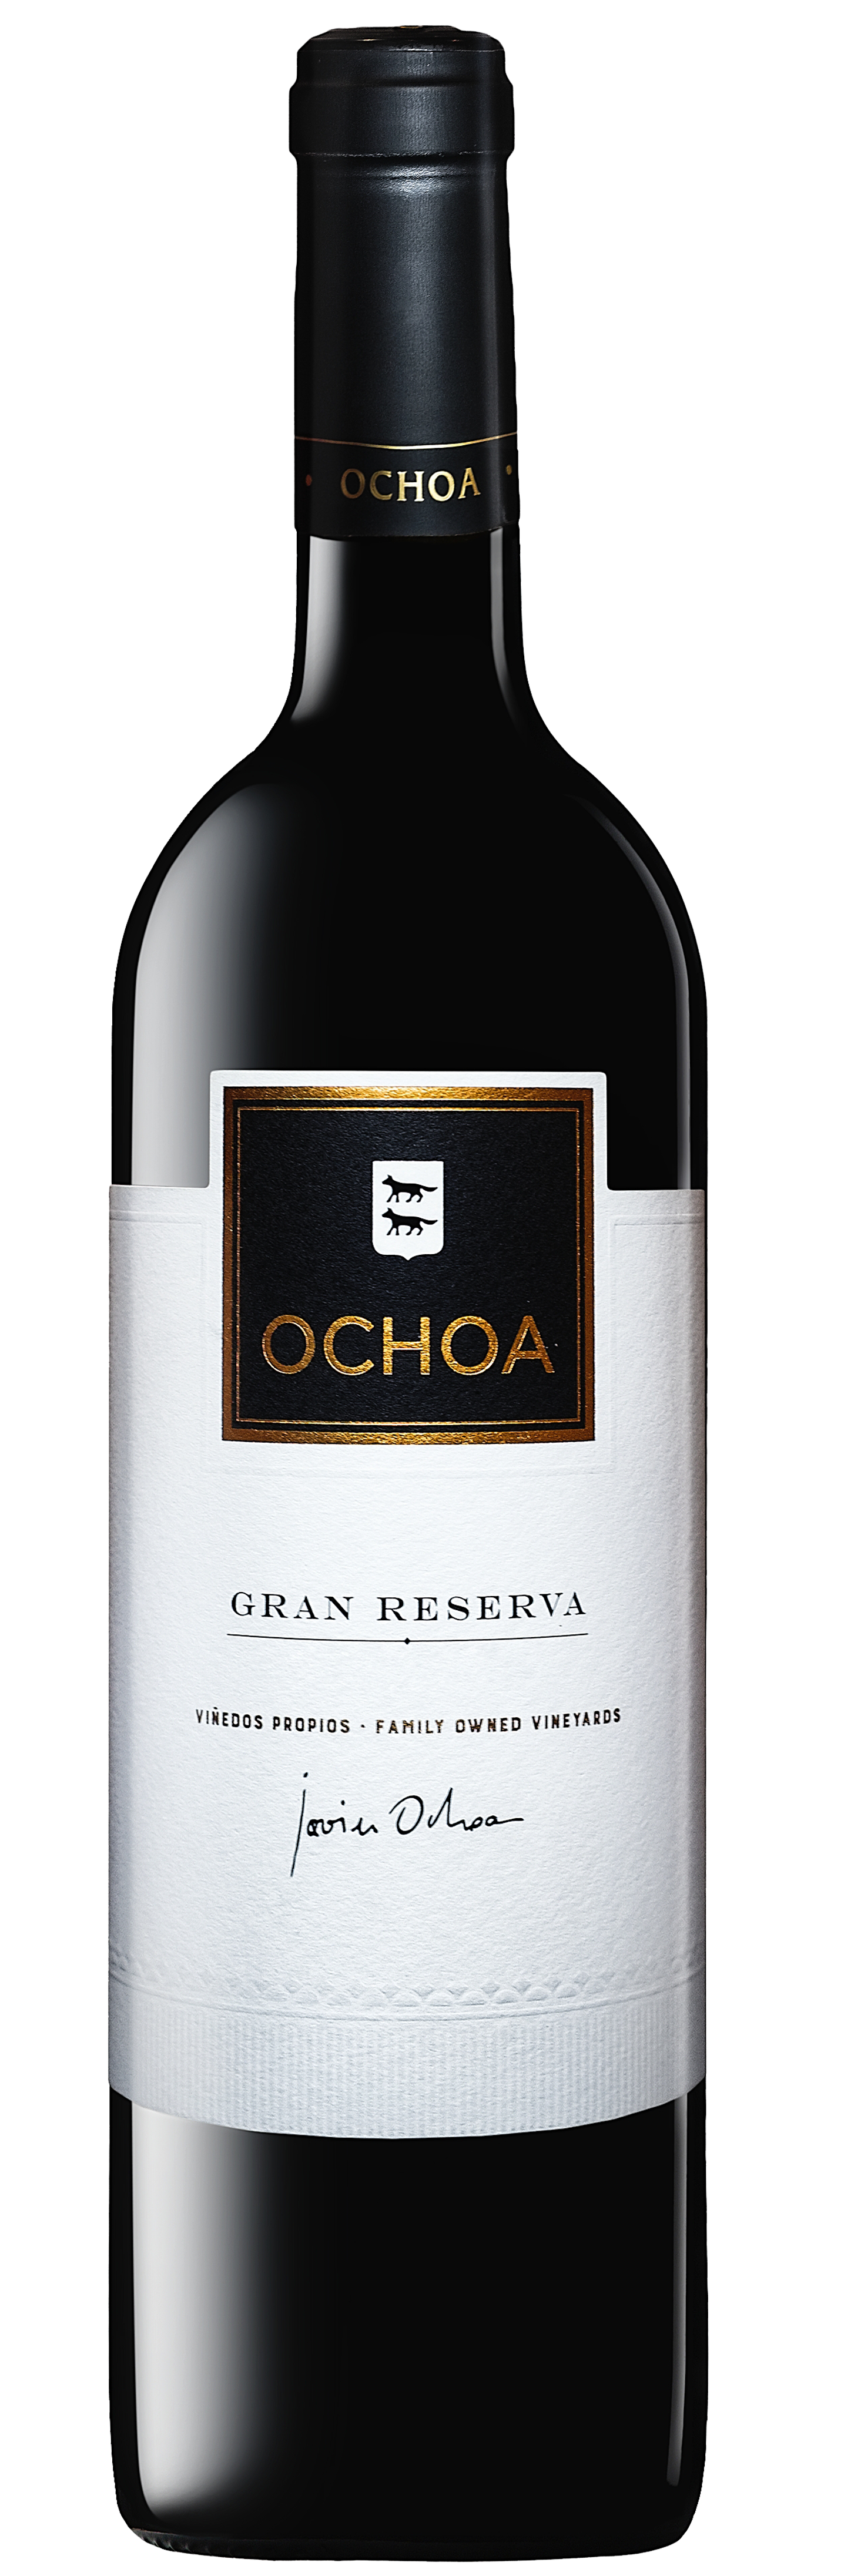 Ochoa, Gran Reserva - 2012 - 0,75 ltr.